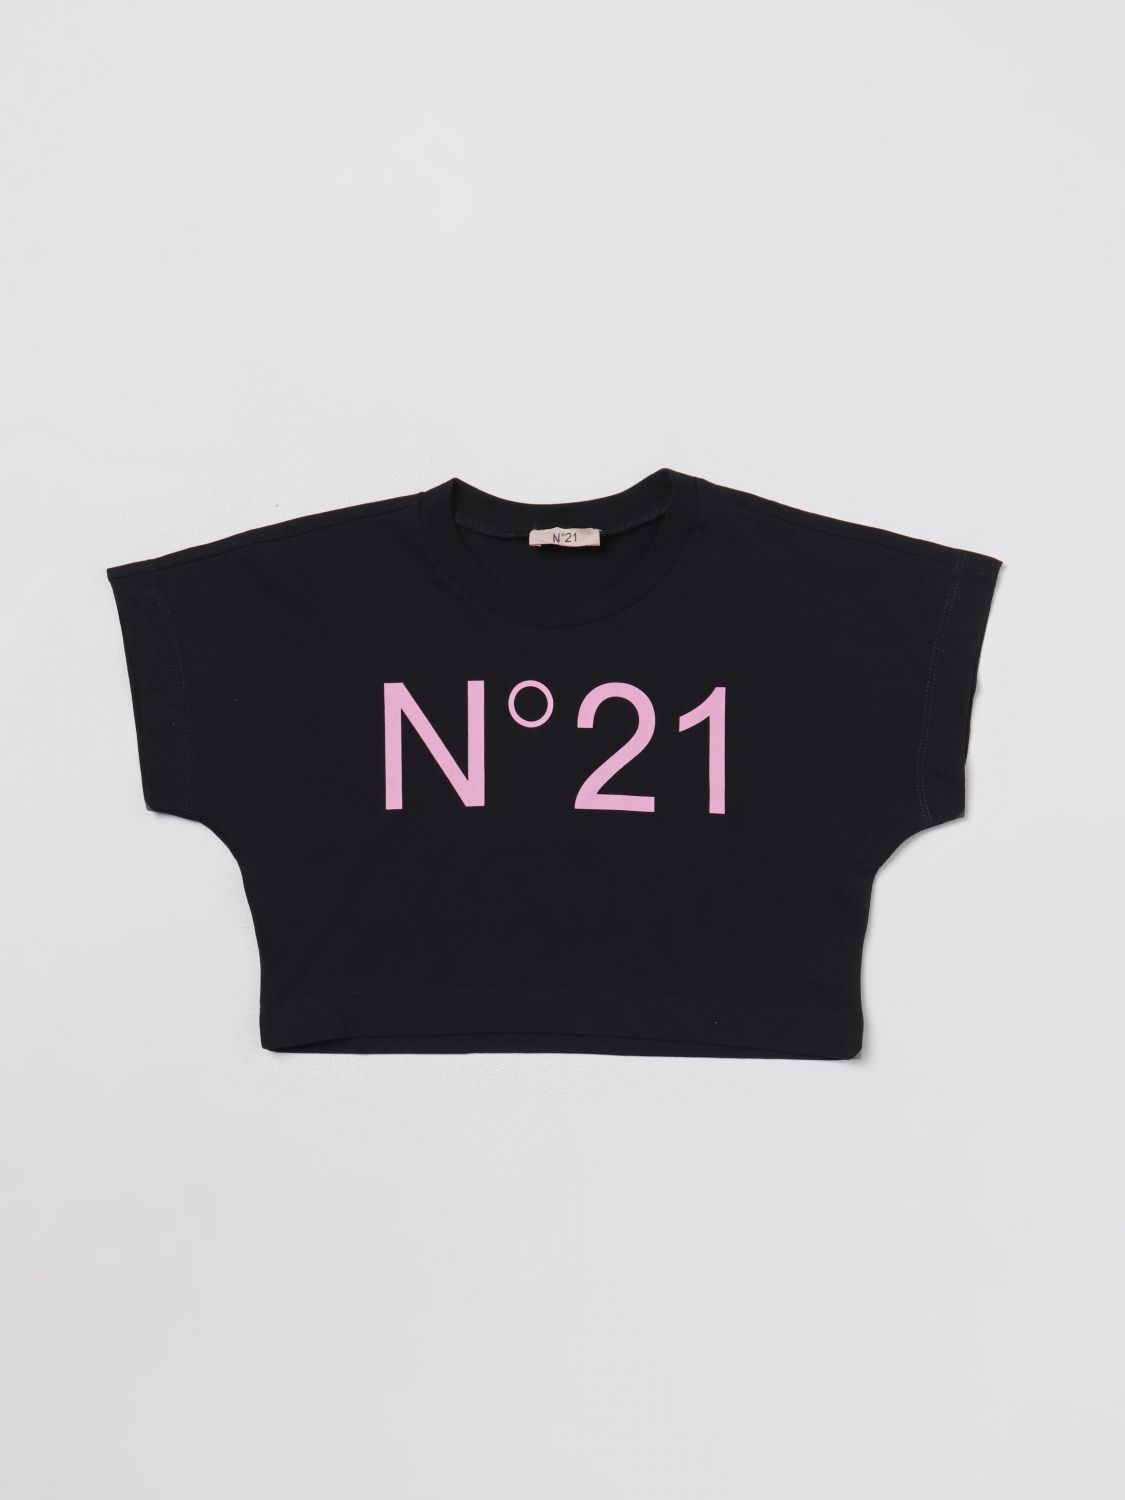 N°21 Kids' T恤 N° 21 儿童 颜色 黑色 In Black